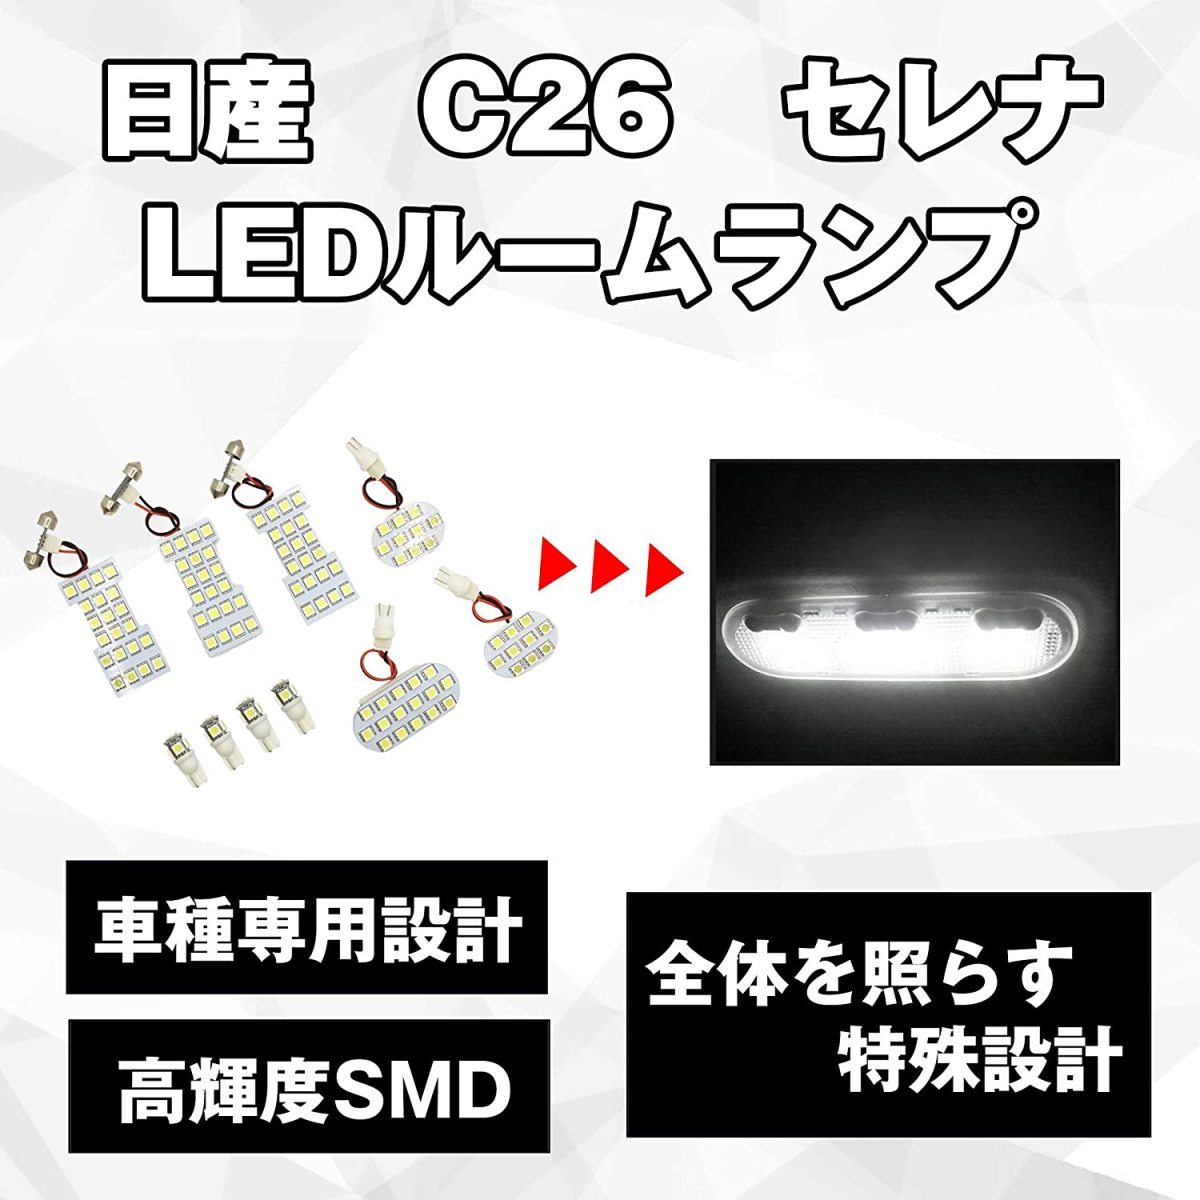 L434 セレナ C26 LED ルームランプ 車種専用 10pcs 白 室内灯 serena ホワイト 高輝度 SMD 日産 ナンバー灯 ポジション T10_画像3